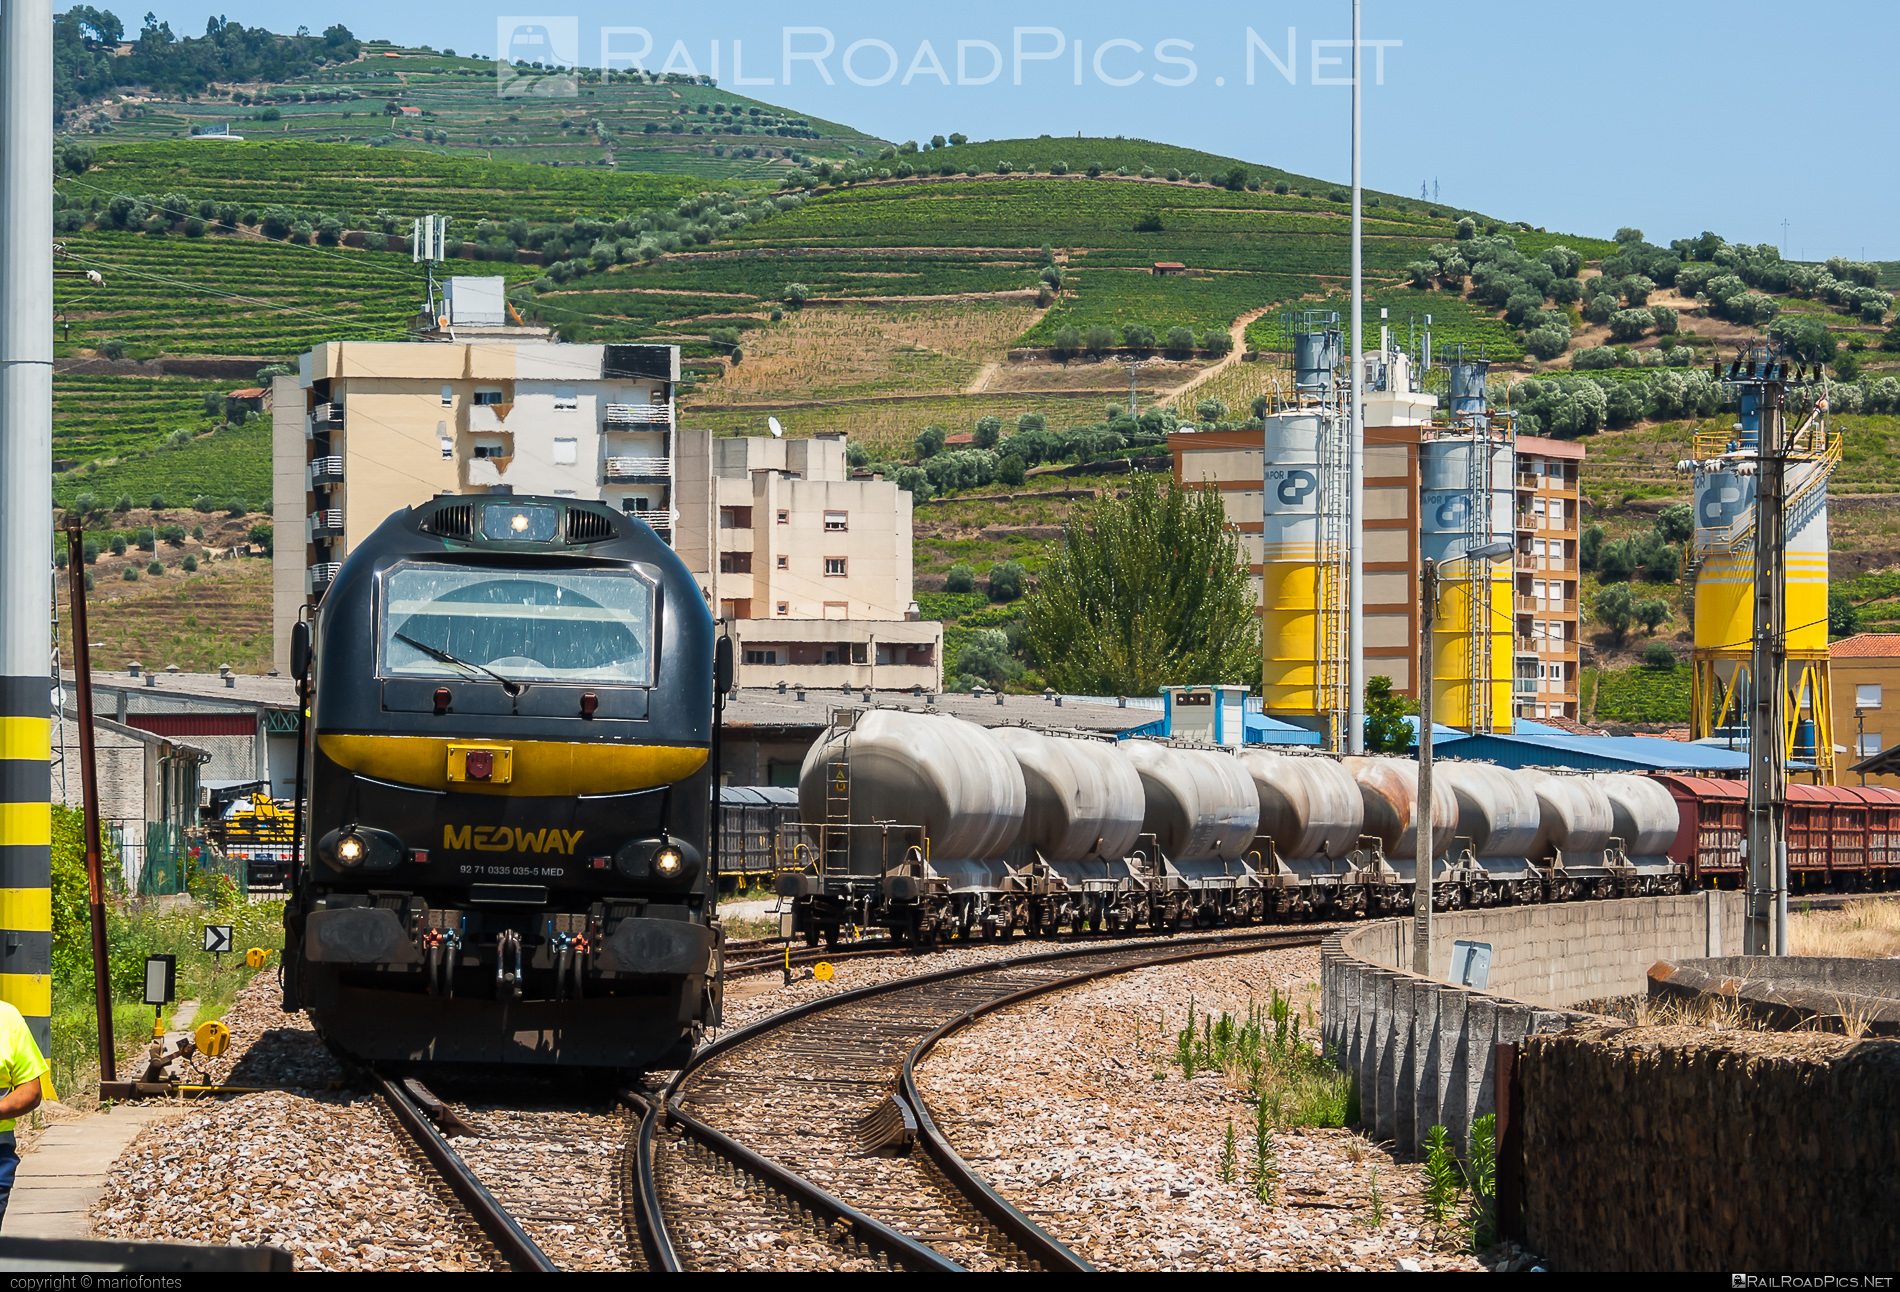 Stadler EURO4000 - 5035 operated by MEDWAY - Operador Ferroviário e Logistico de Mercadorias, SA #euro4000 #medway #stadler #stadlerEuro4000 #stadlerrail #stadlerrailag #vosslohEuro